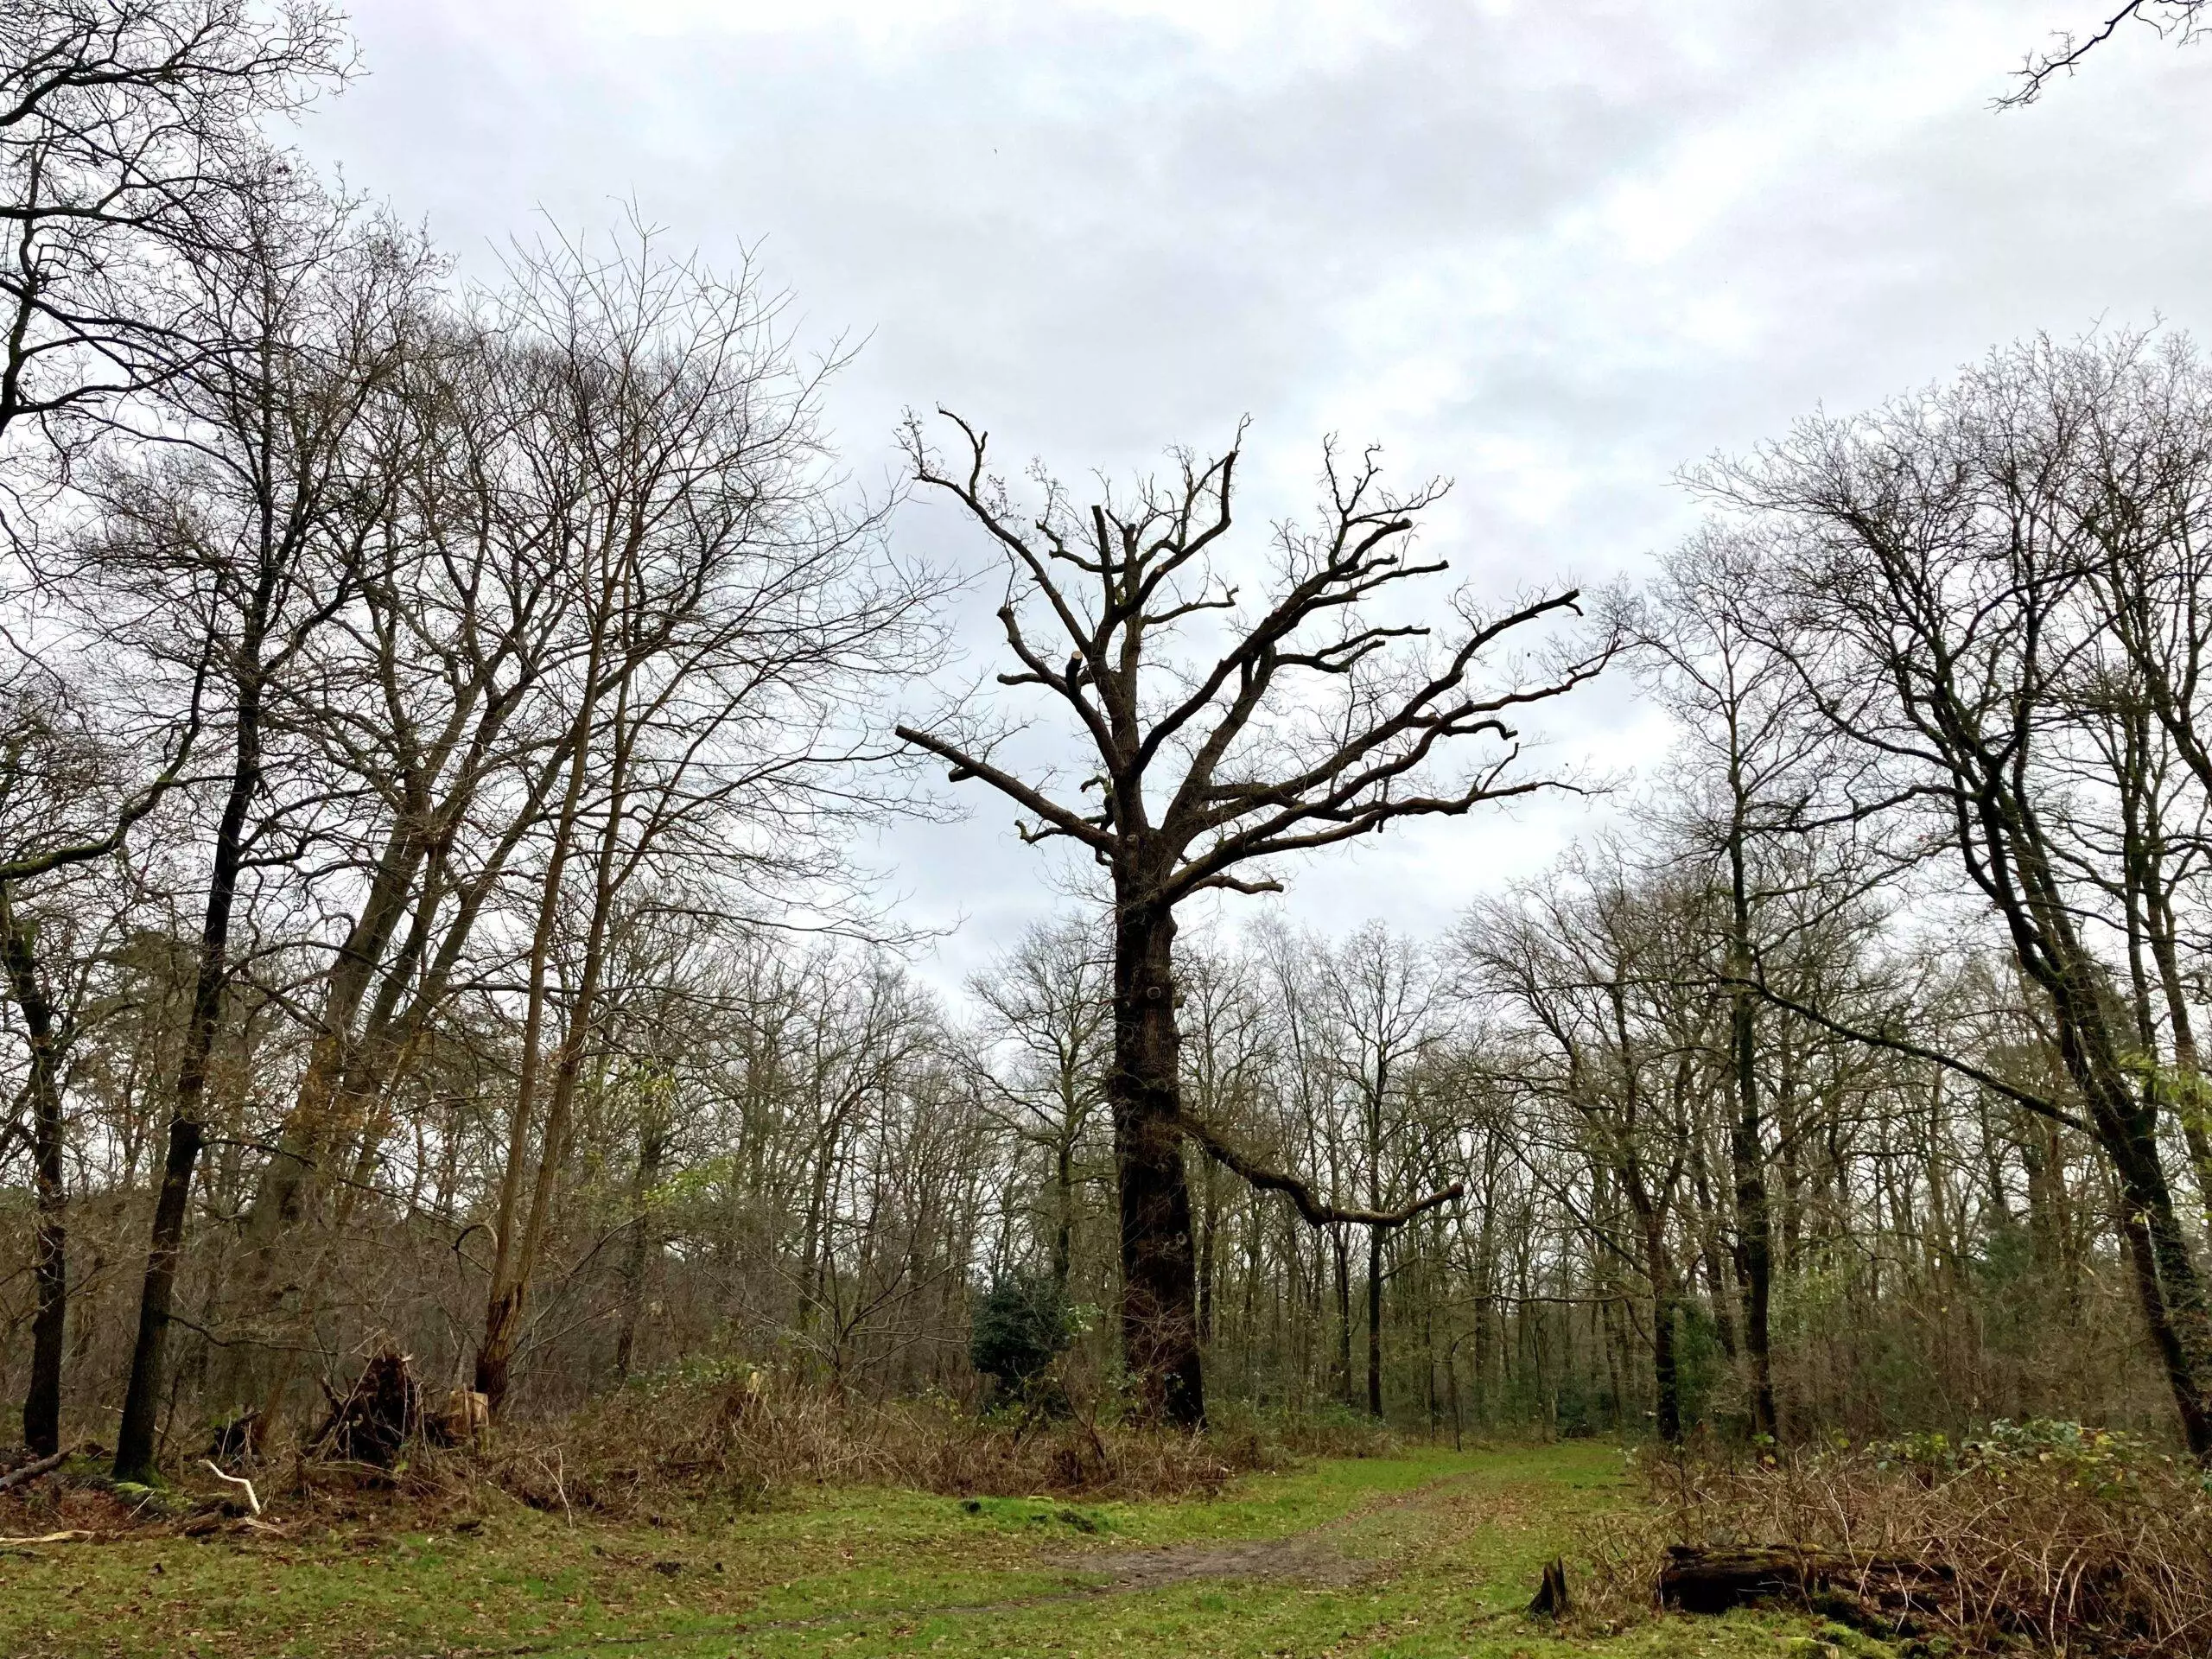 Boswachter Dirk: De oud(st)e boom